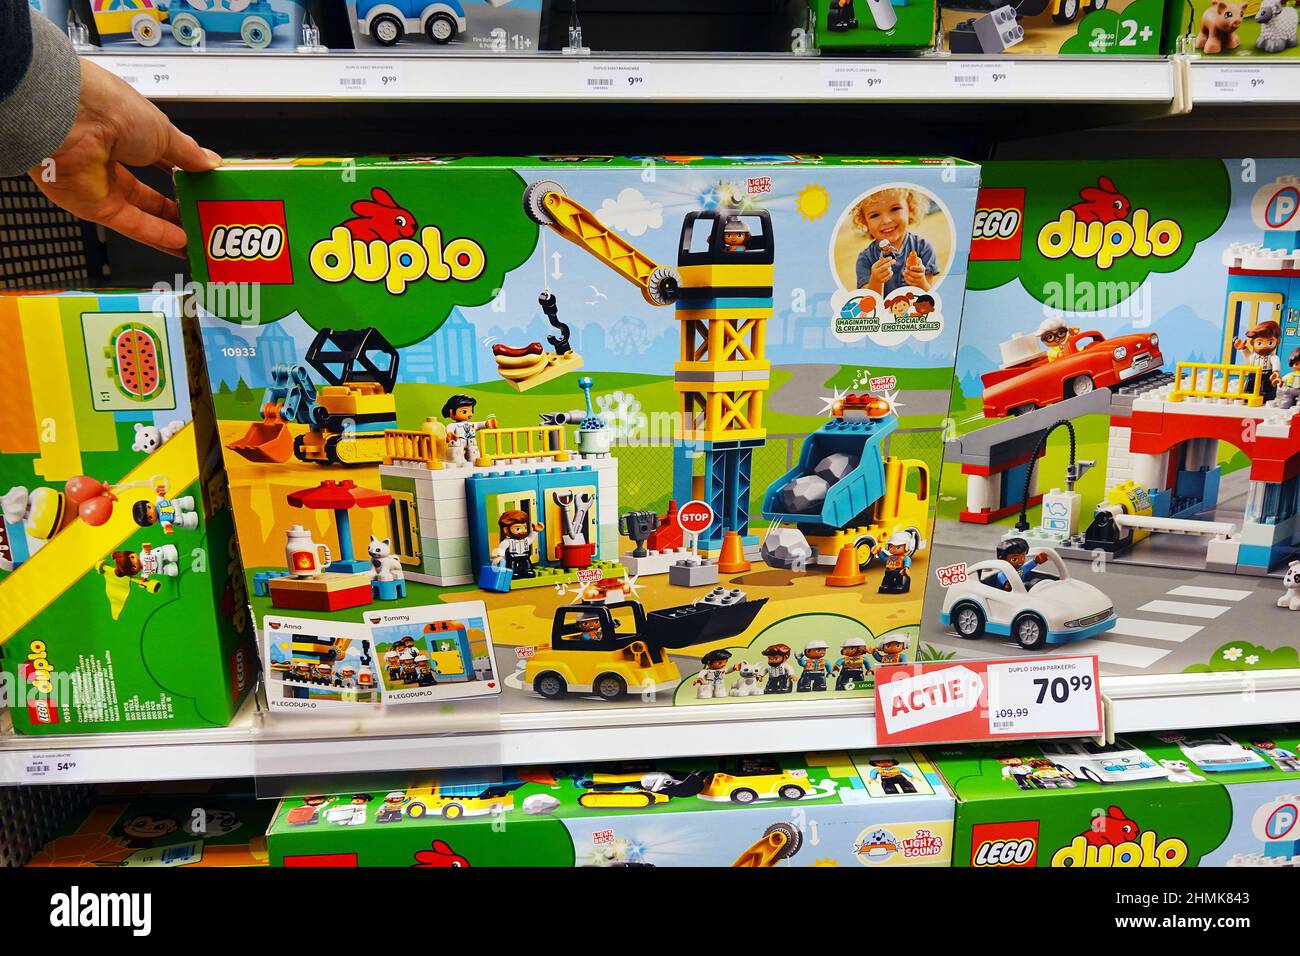 Boîtes lego duplo dans un magasin d'articles de toyshop Photo Stock - Alamy